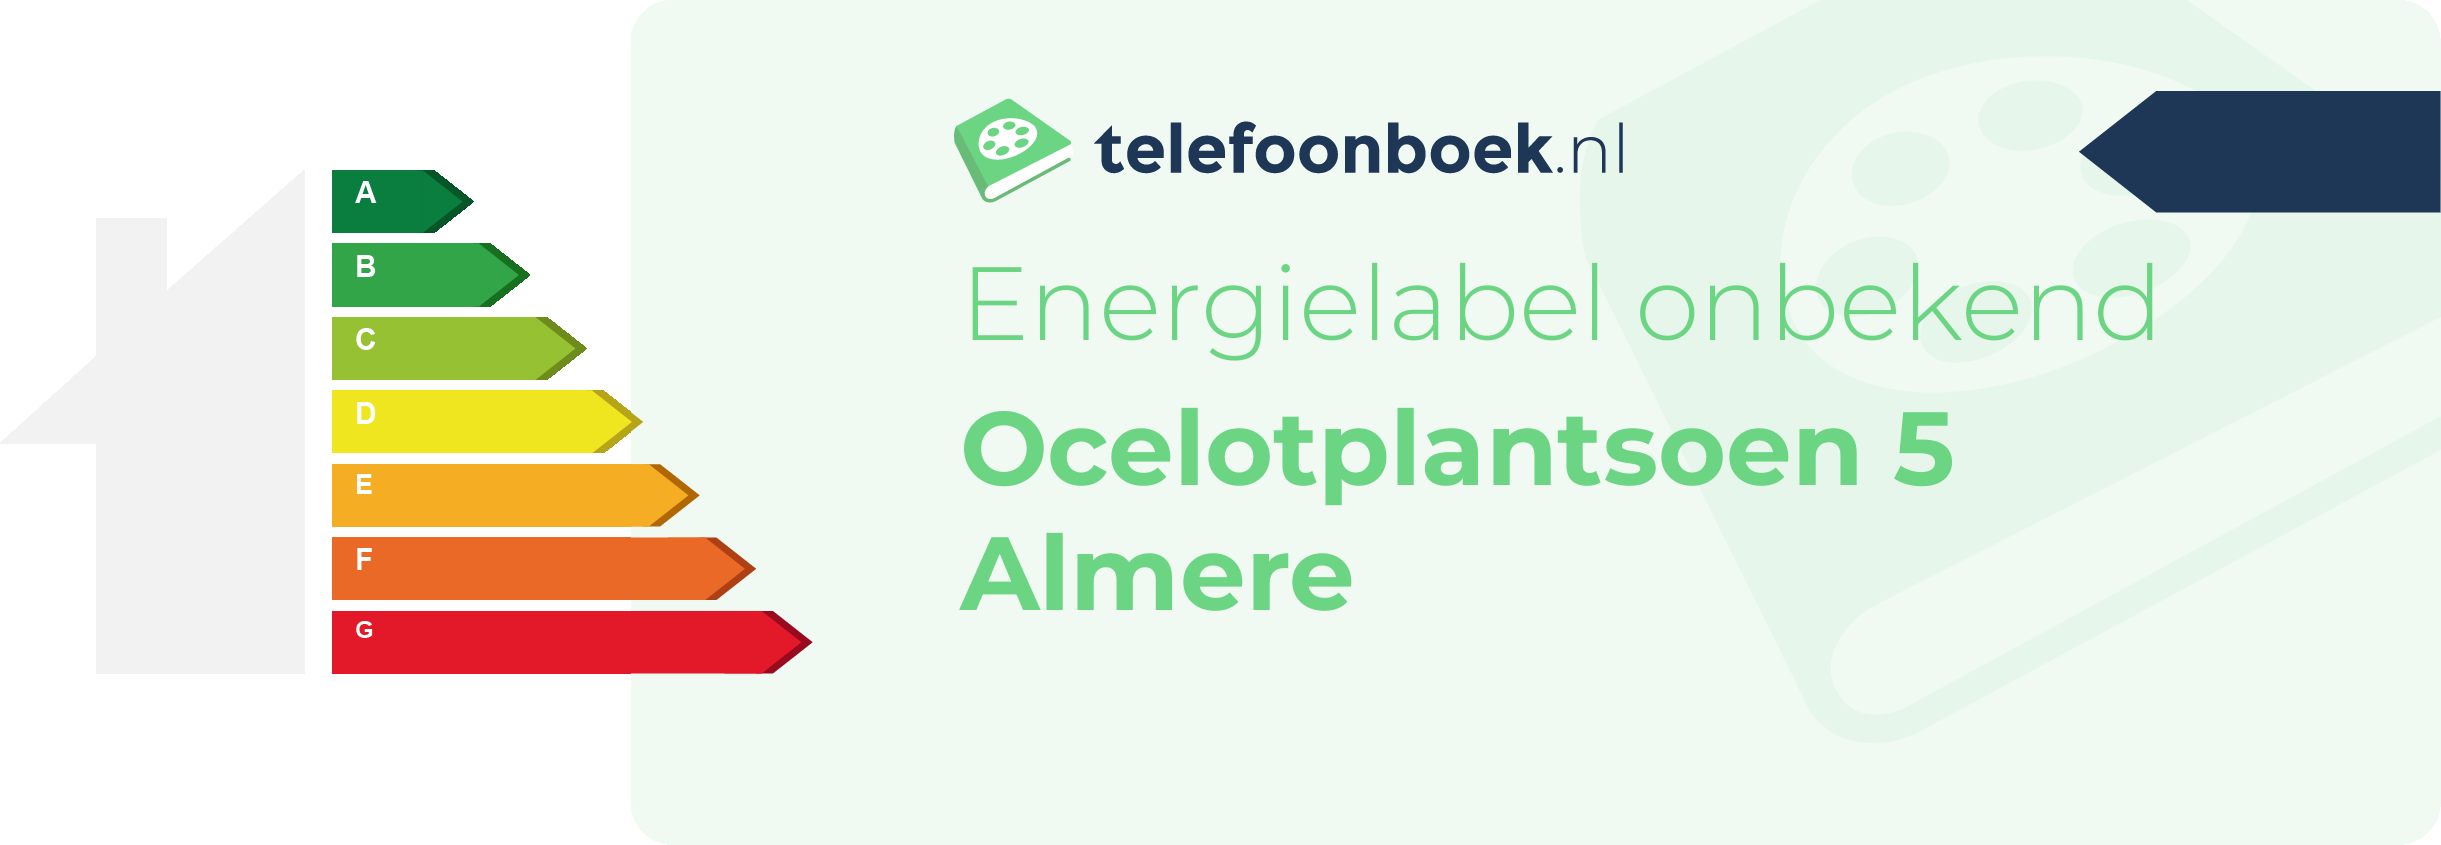 Energielabel Ocelotplantsoen 5 Almere